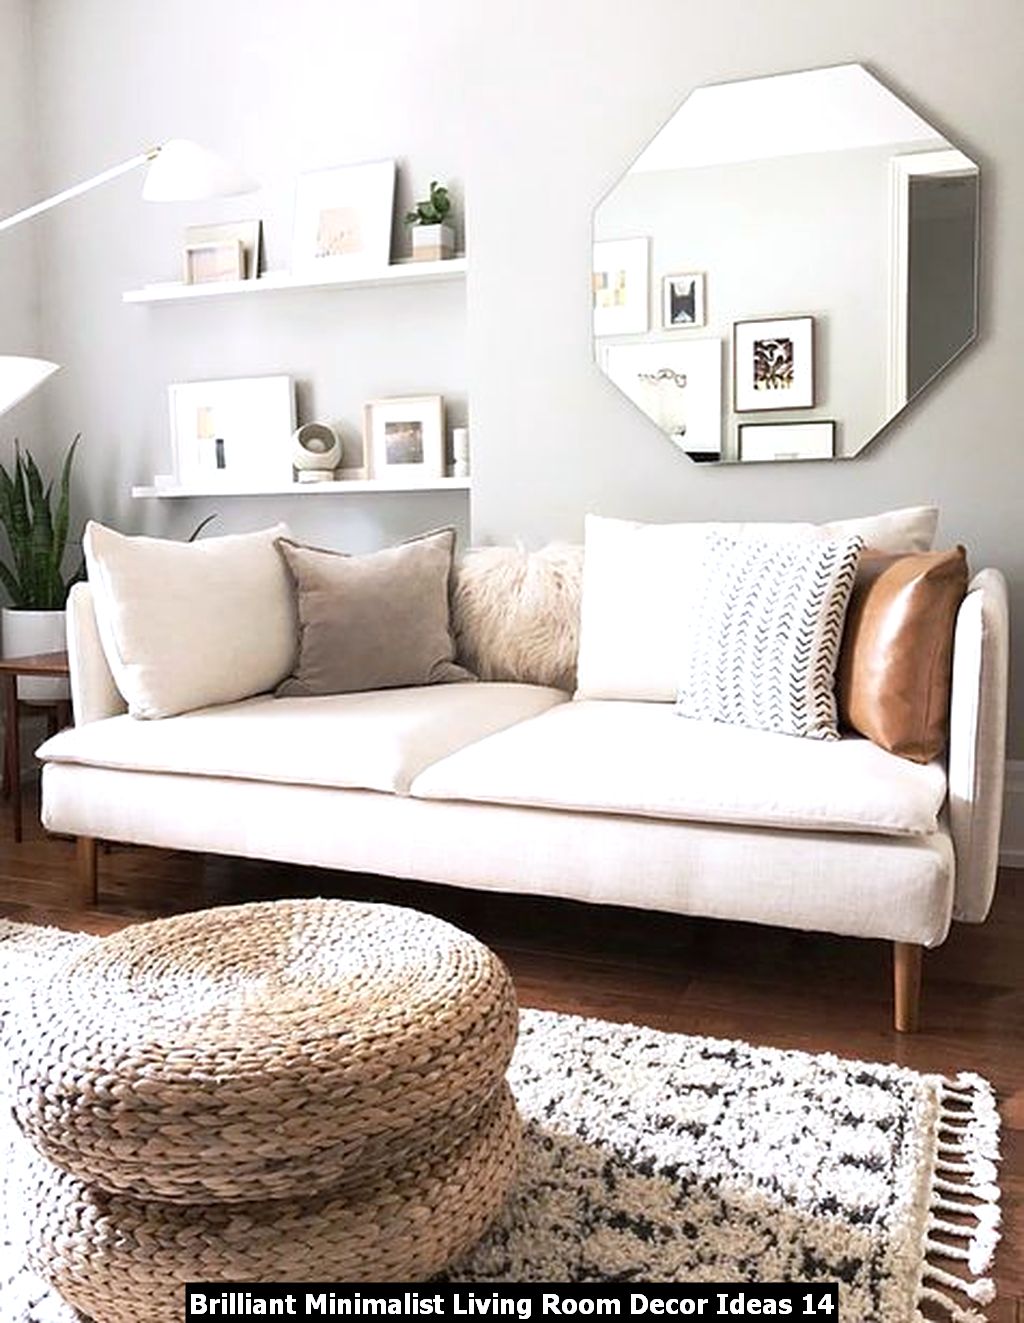 Brilliant Minimalist Living Room Decor Ideas - PIMPHOMEE